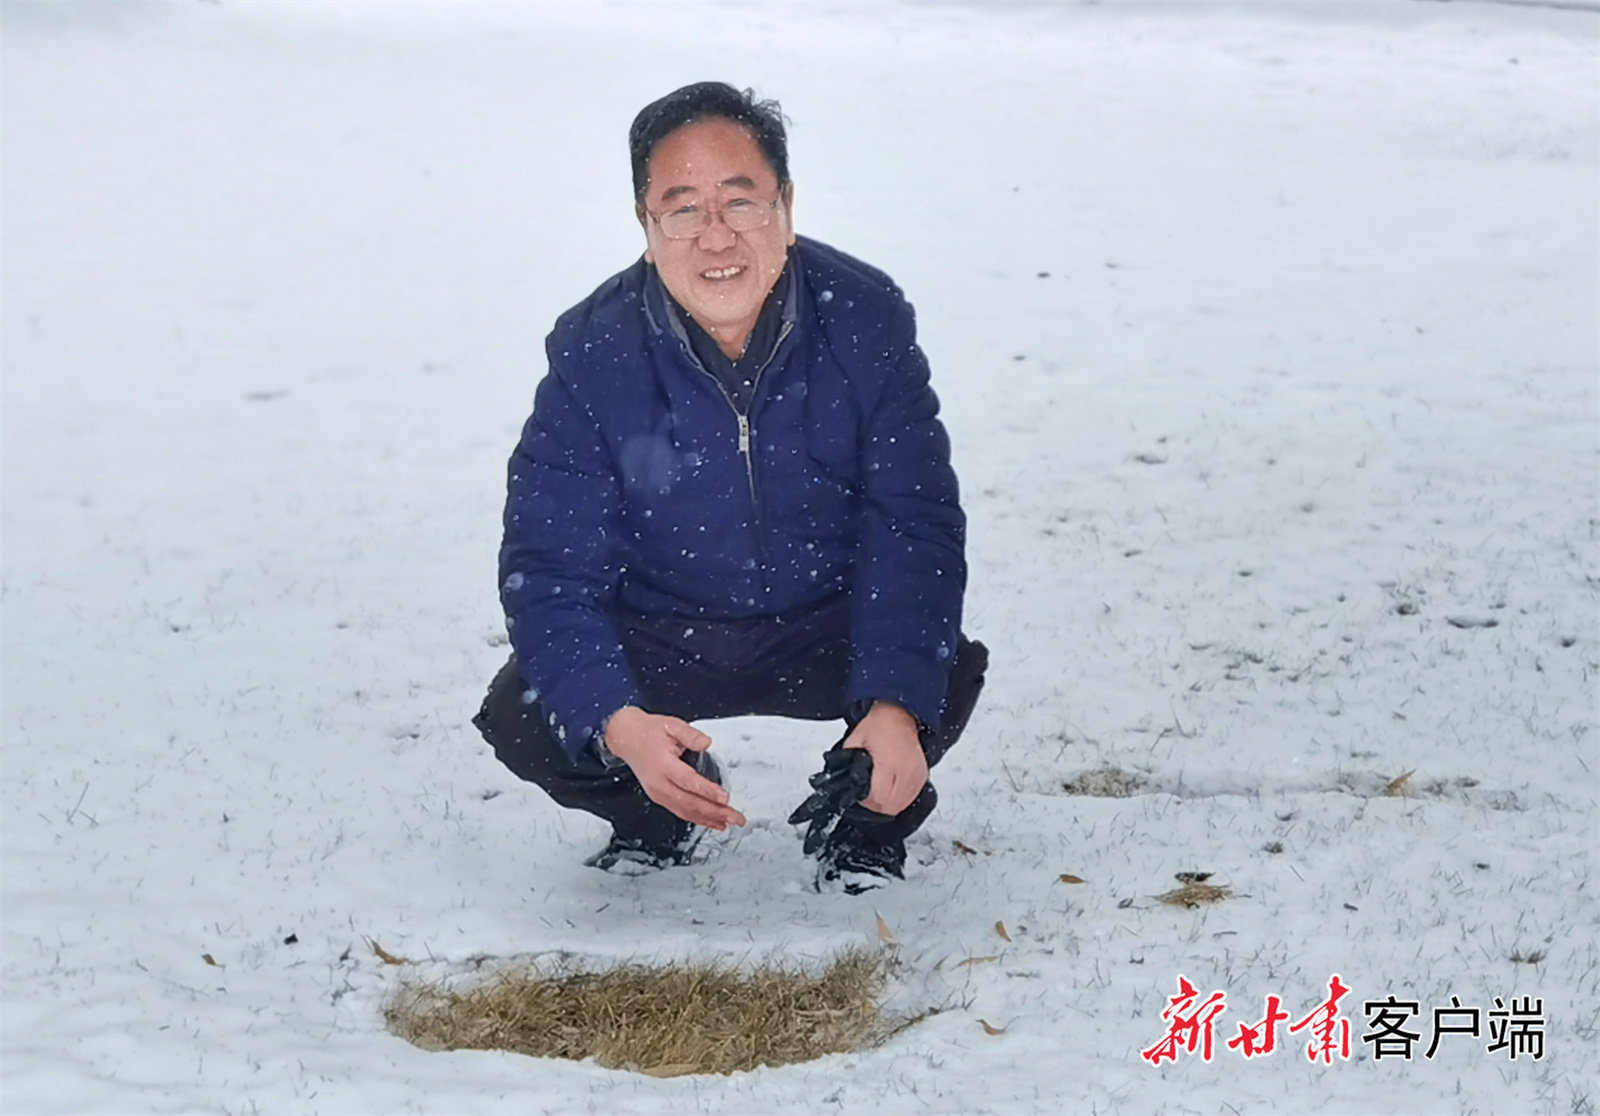 柴守玺观察雪后土壤情况